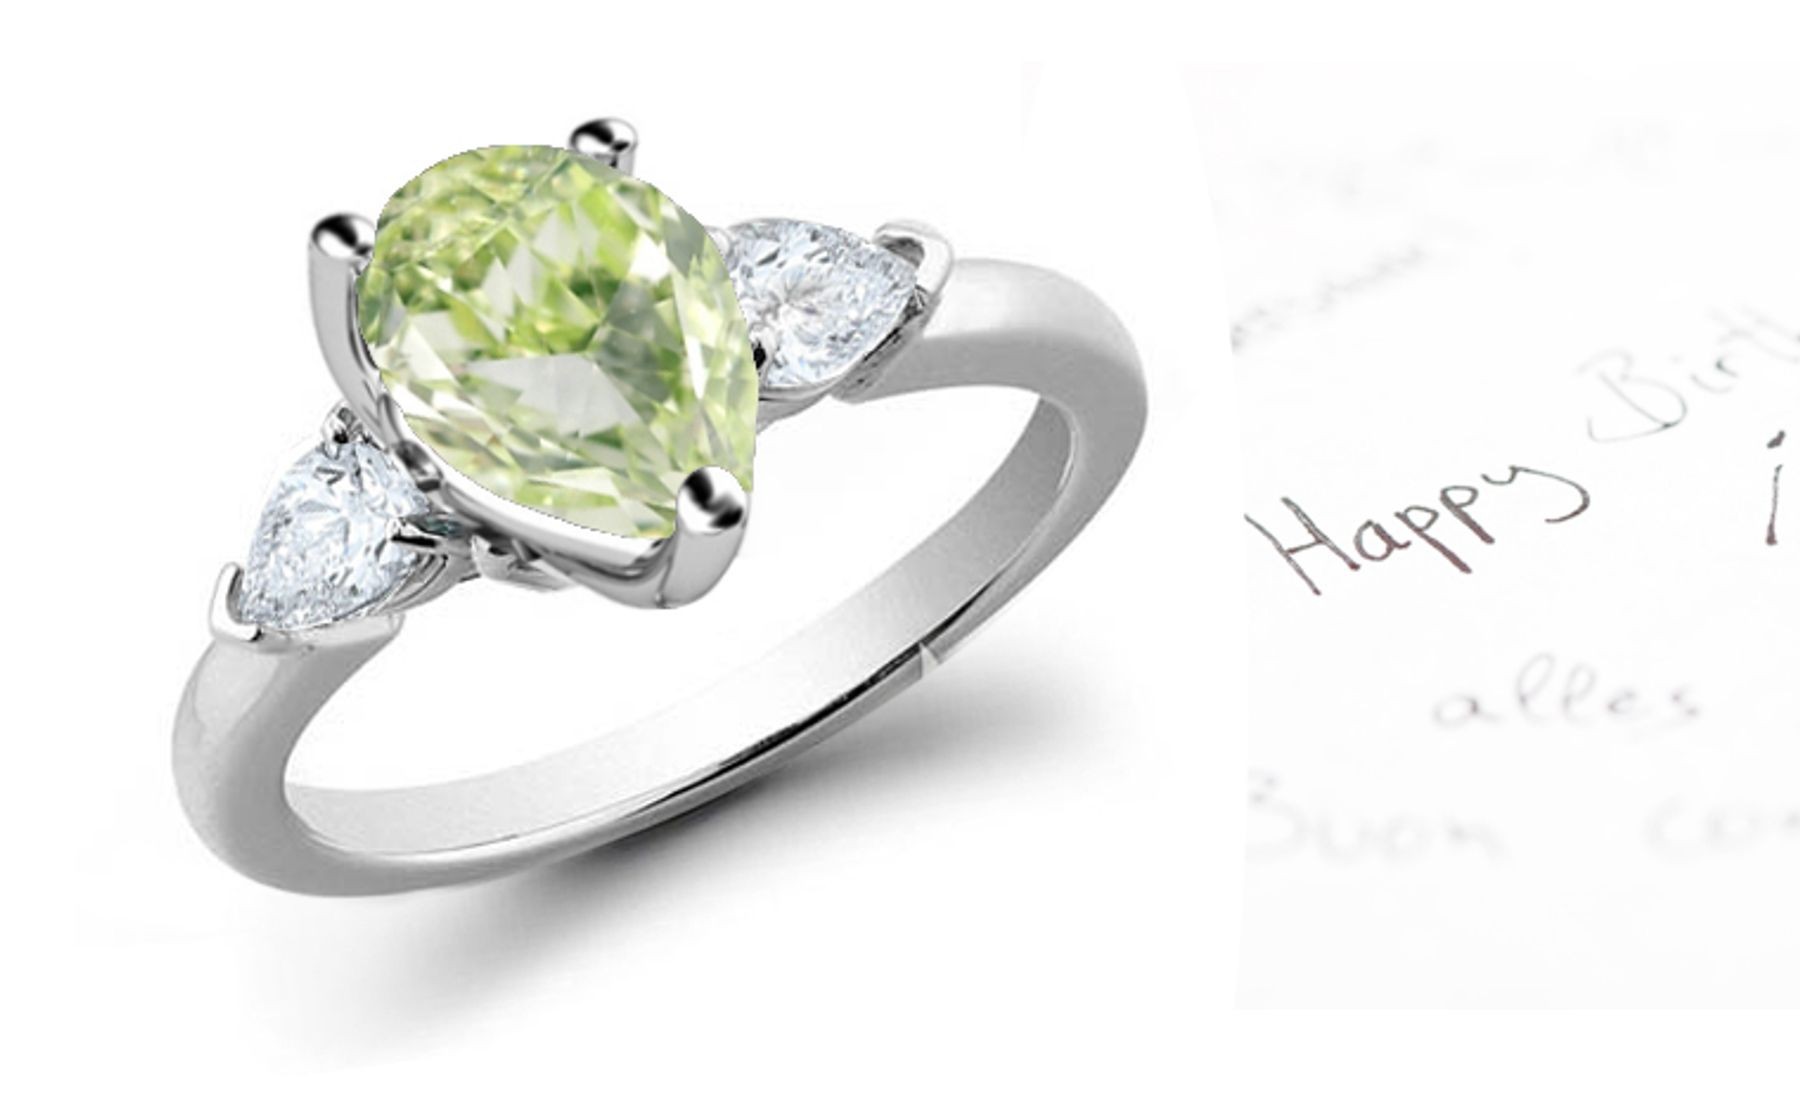 Pears Green Diamond Designer Ring